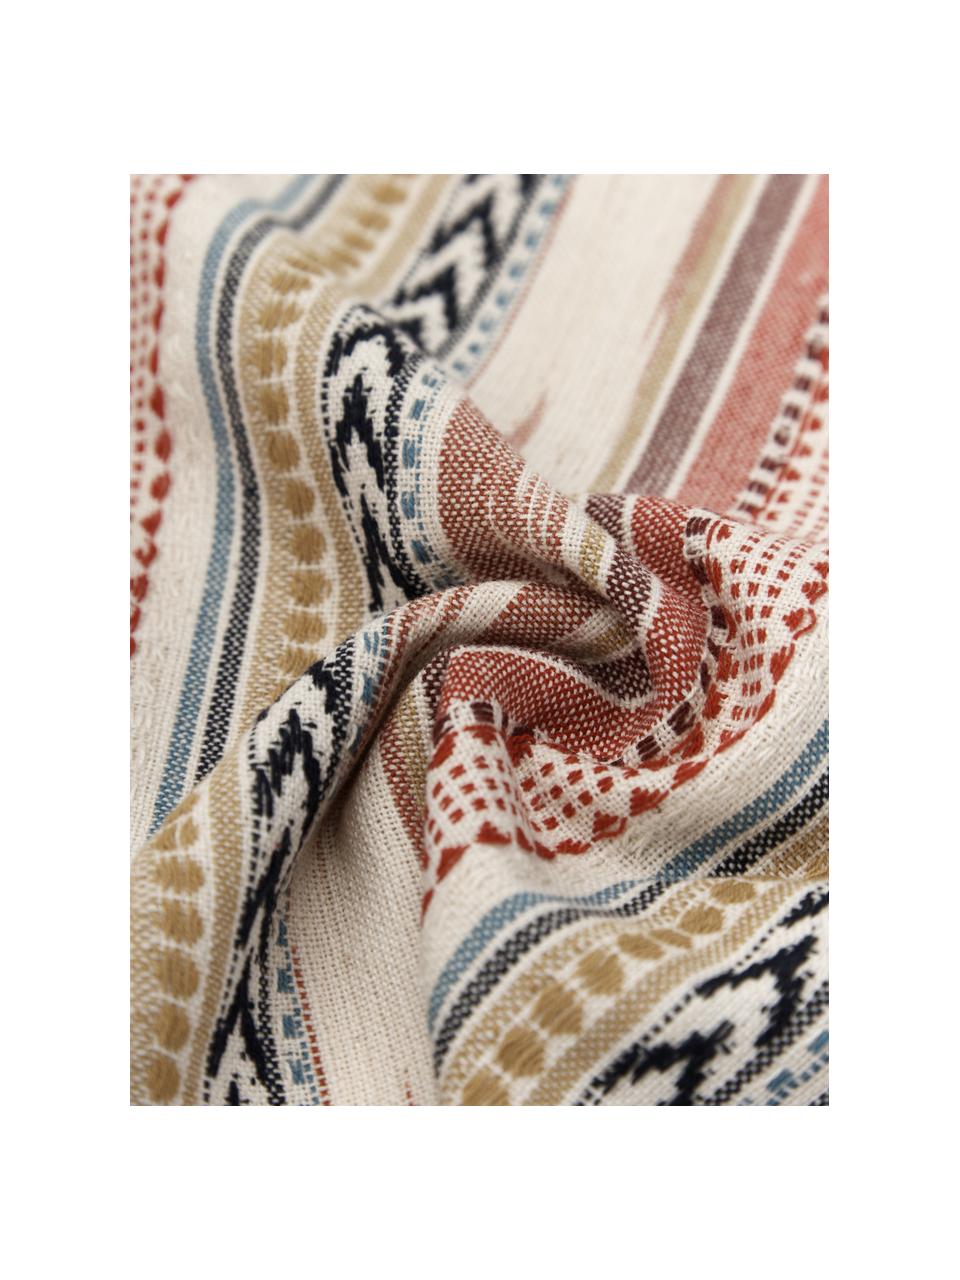 Poszewka na poduszkę z bawełny w stylu etno Maja, 100% bawełna, Beżowy, wielobarwny, we wzór, S 45 x D 45 cm